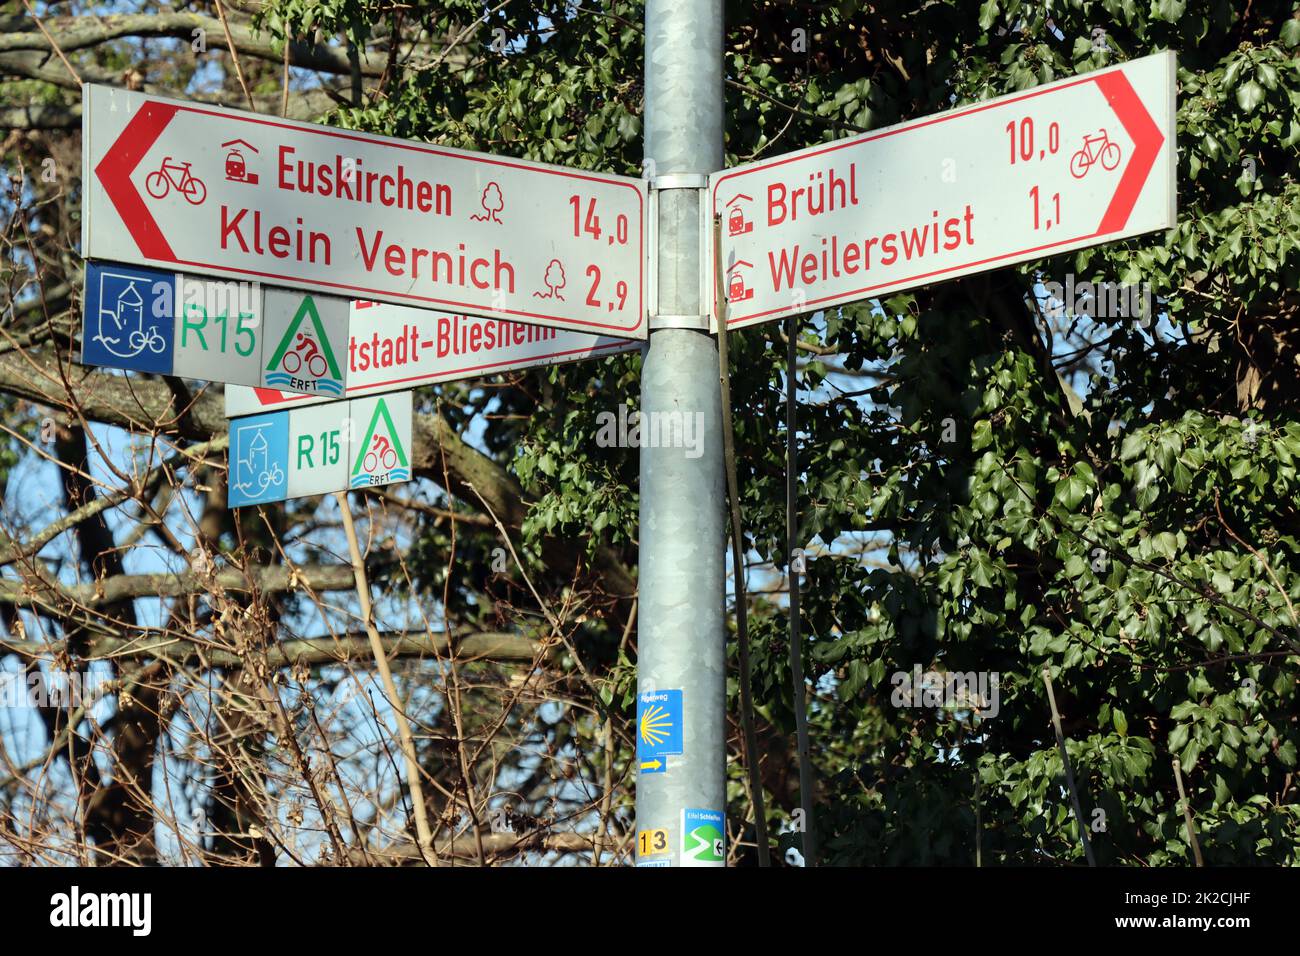 Wegweiser am Erftradweg, Nordrhein-Westfalen, Deutschland, Weilerswist Stock Photo